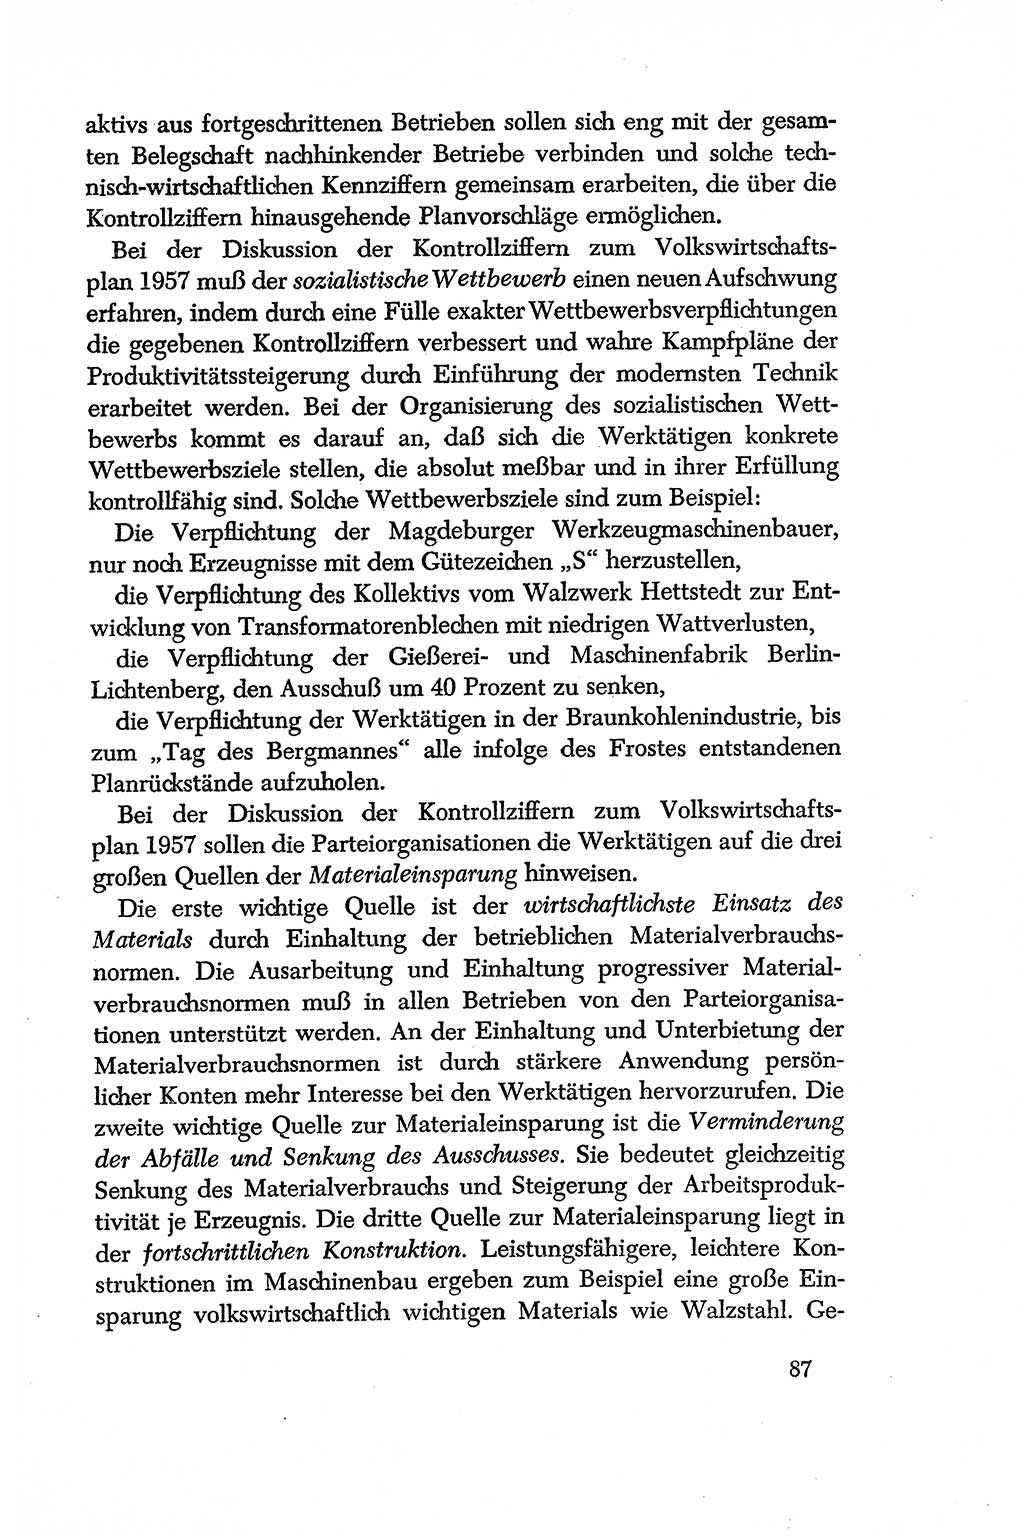 Dokumente der Sozialistischen Einheitspartei Deutschlands (SED) [Deutsche Demokratische Republik (DDR)] 1956-1957, Seite 87 (Dok. SED DDR 1956-1957, S. 87)